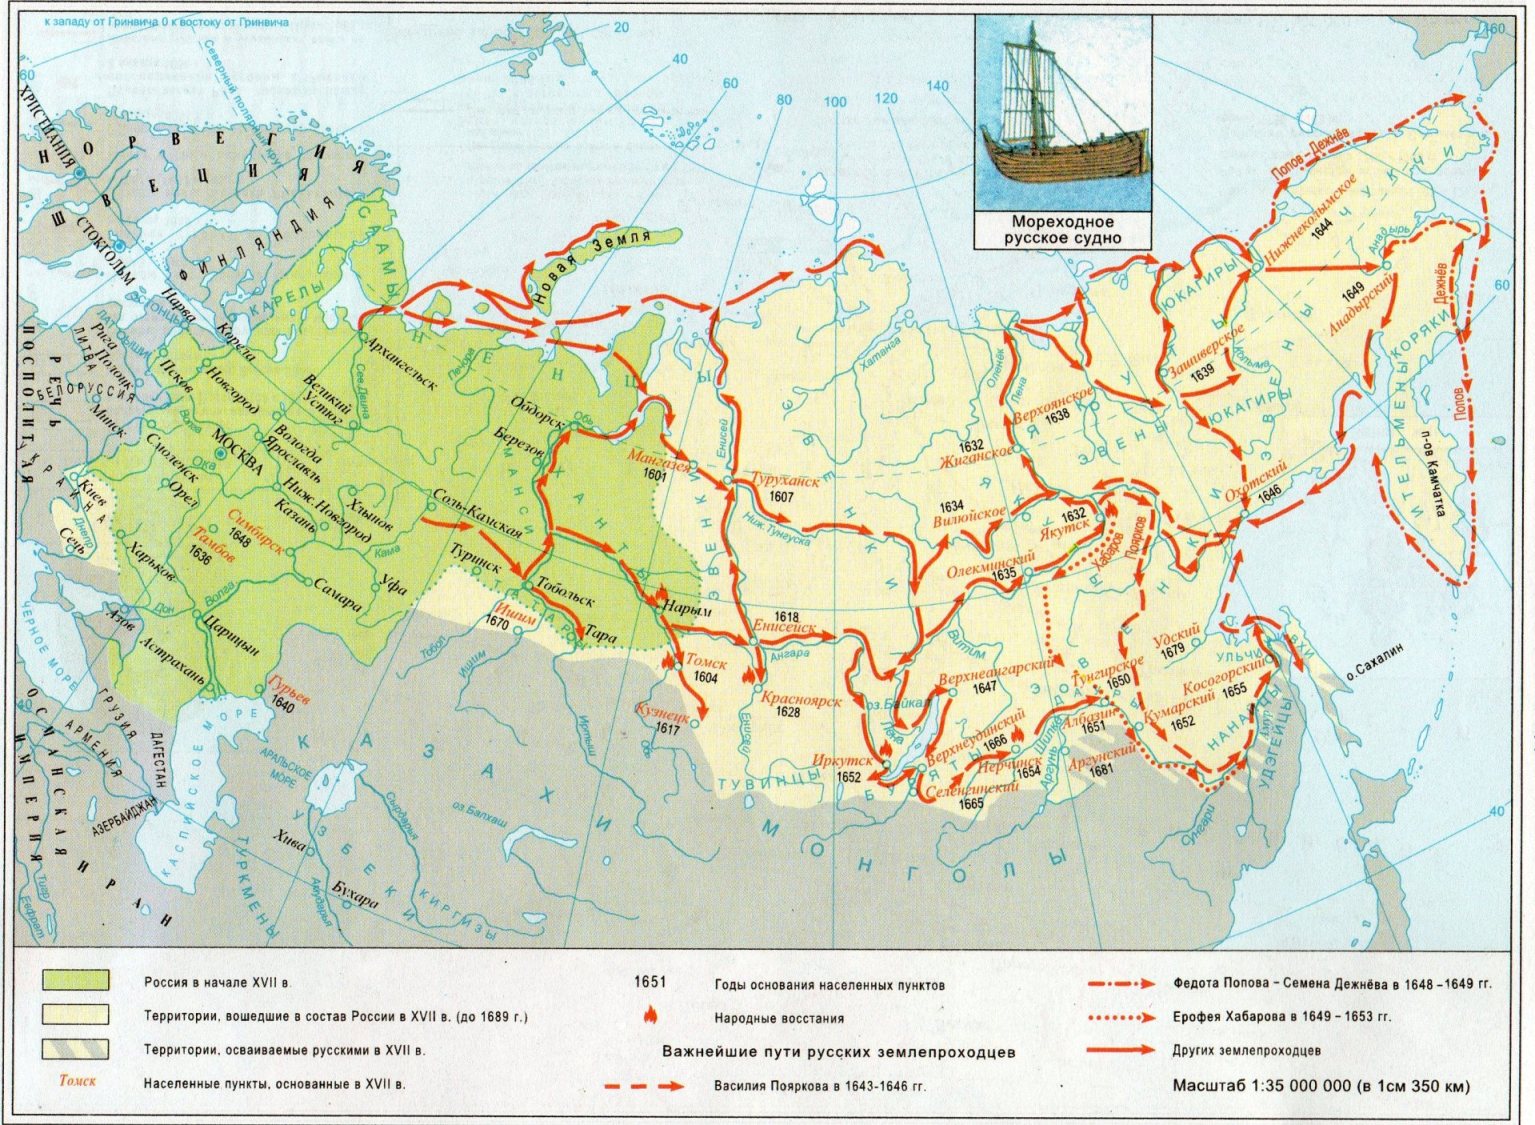 Народы сибири и дальнего востока таблица история